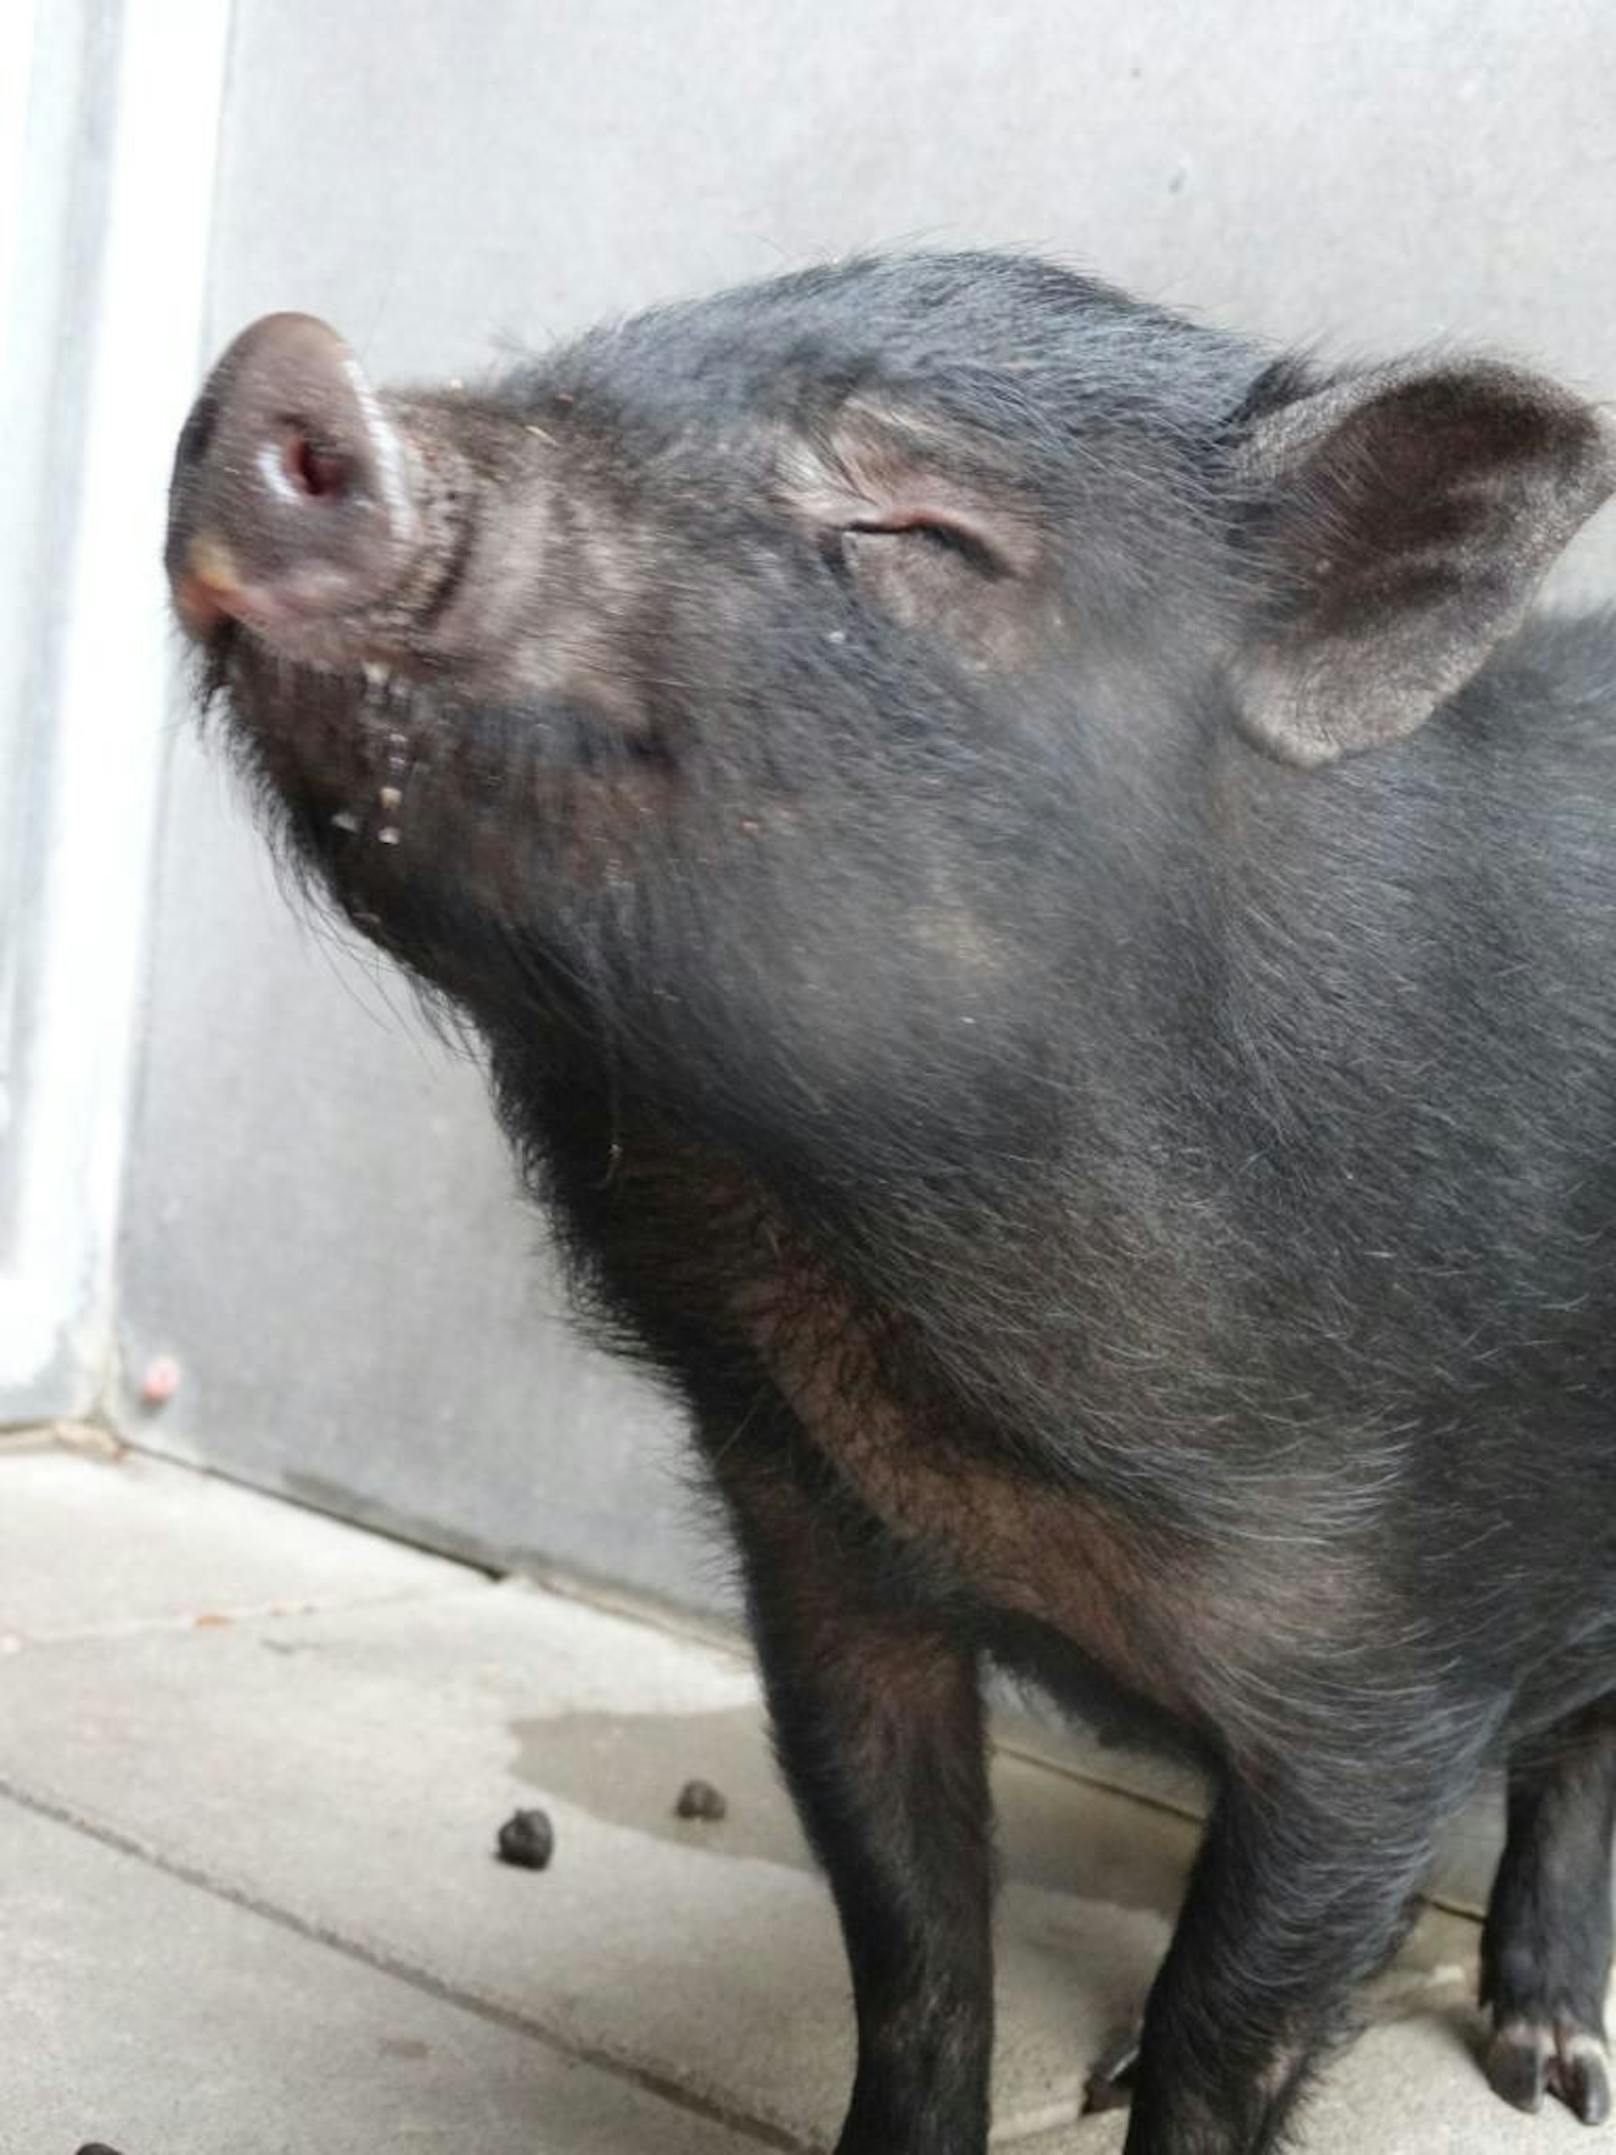 Jetzt erholt sich das Schweinchen im Wiener Tierschutzverein.